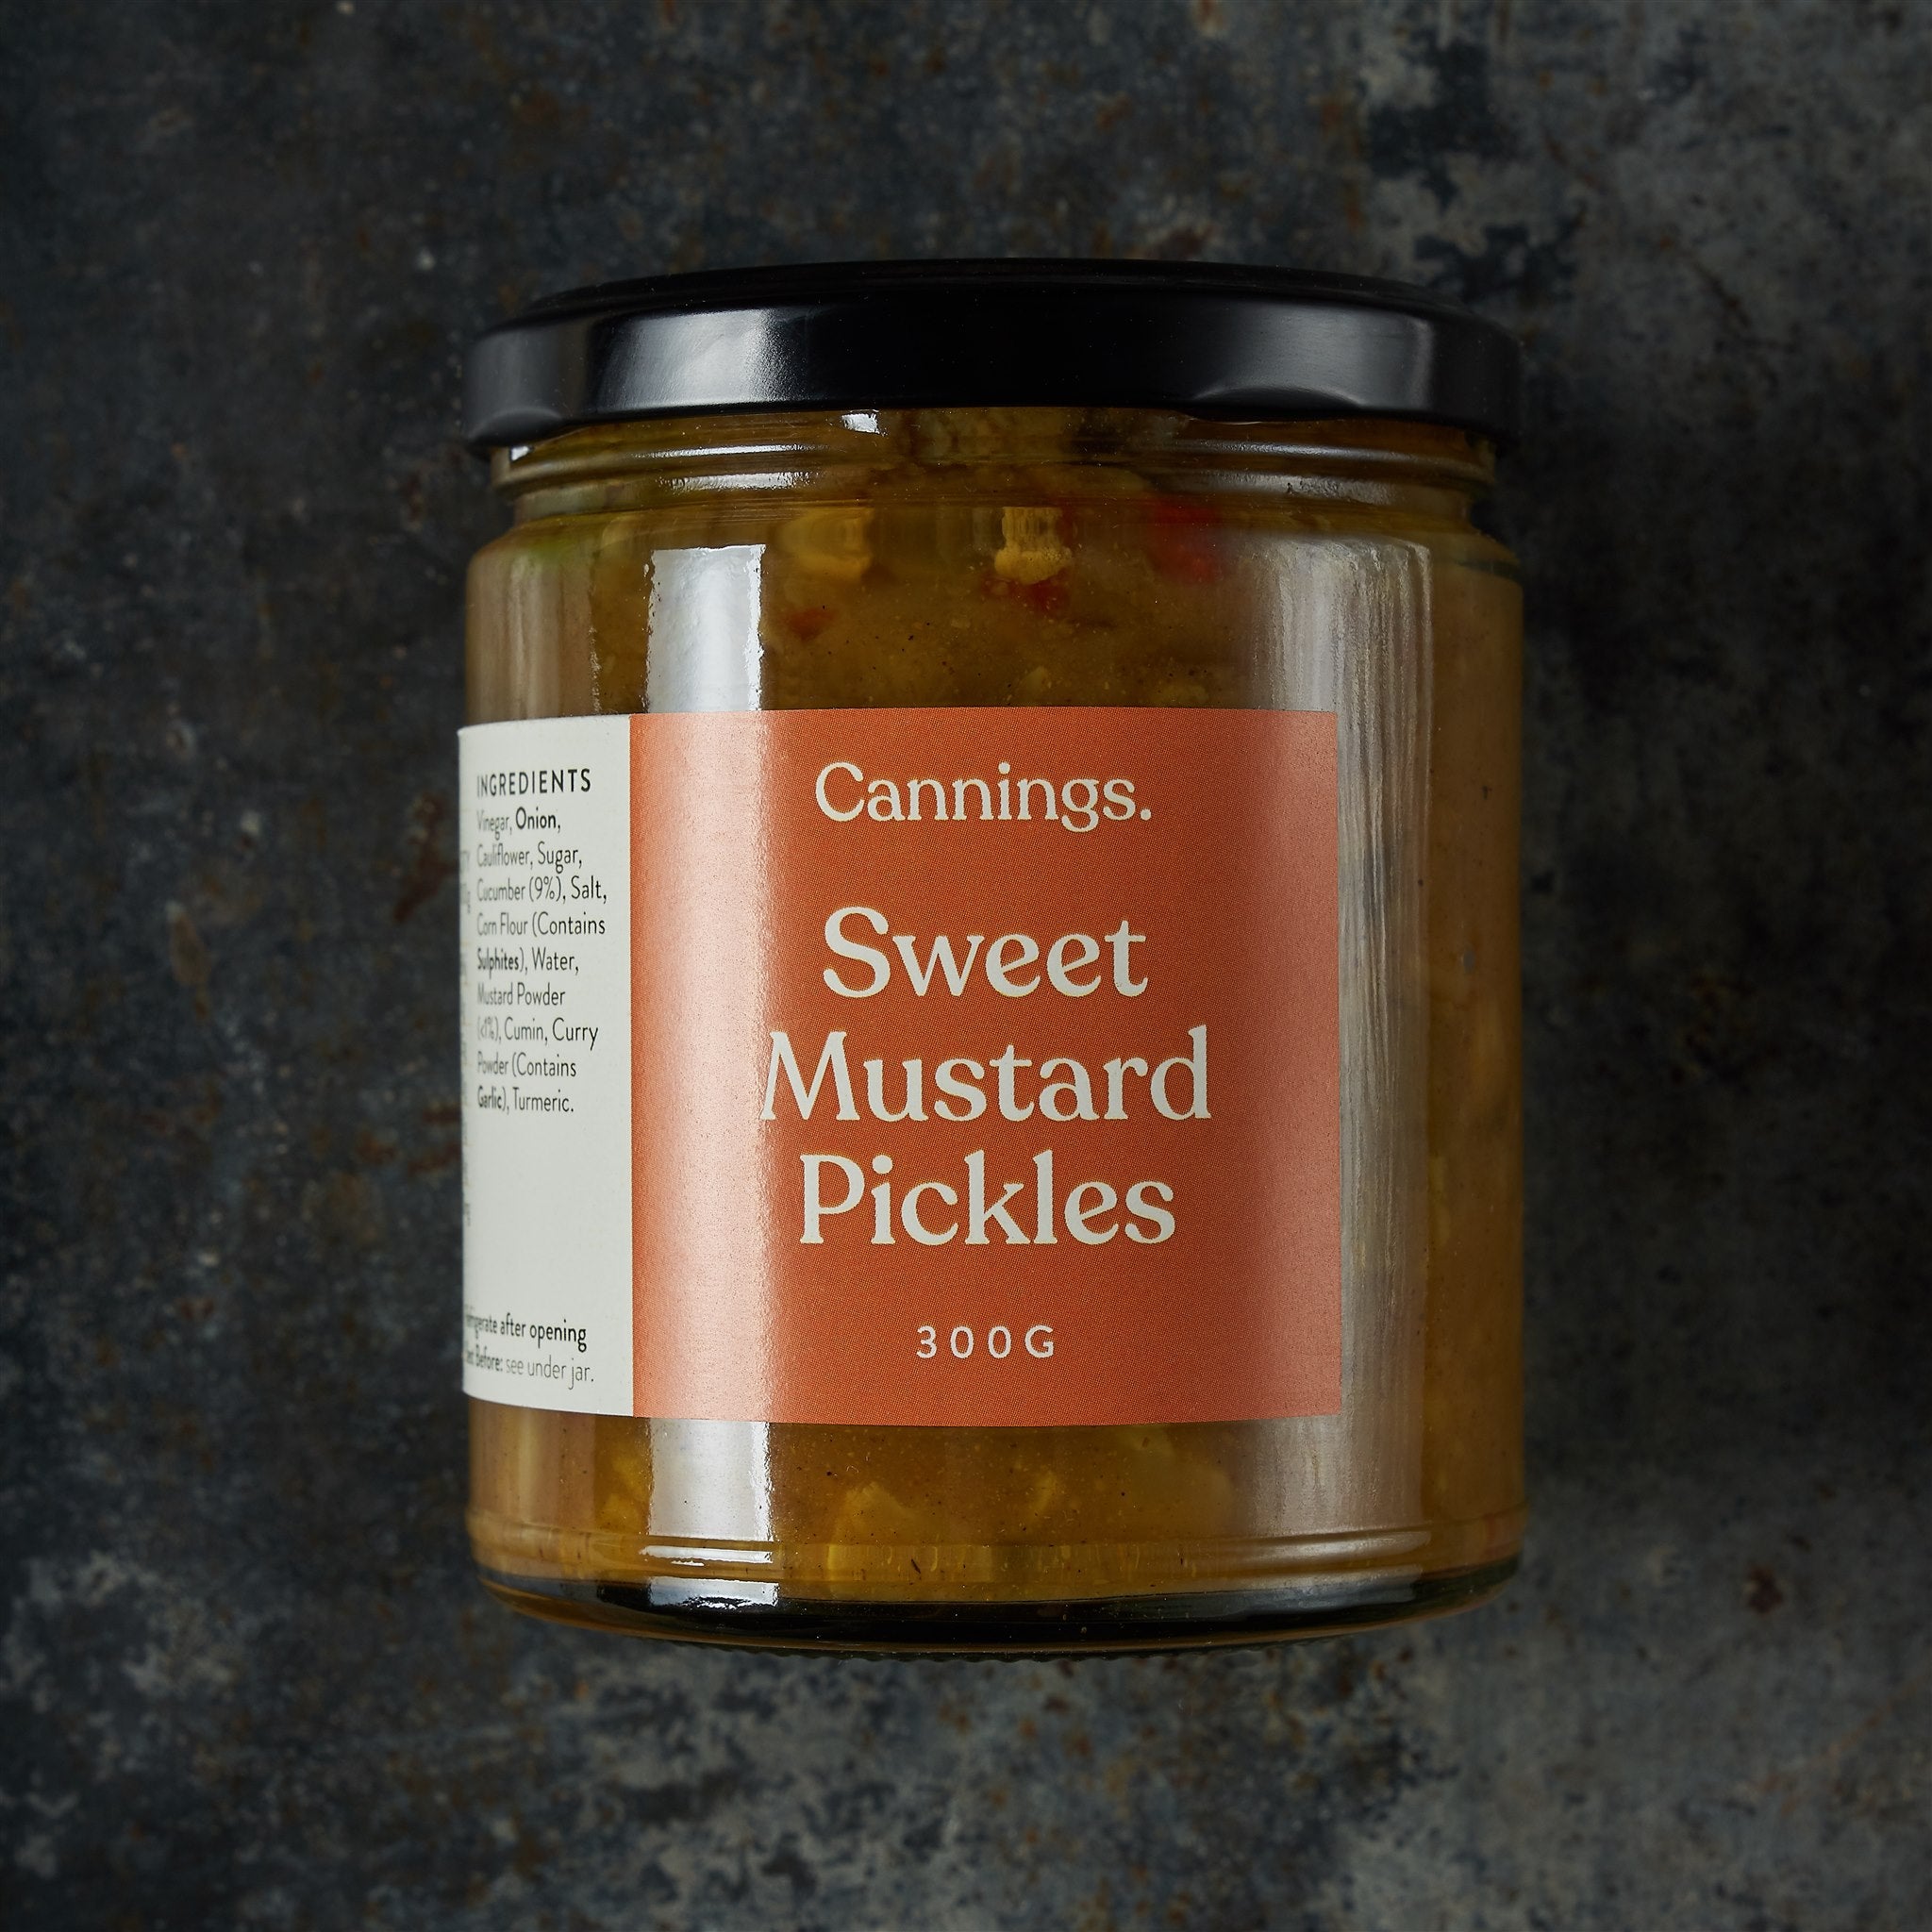 Sweet Mustard Pickles